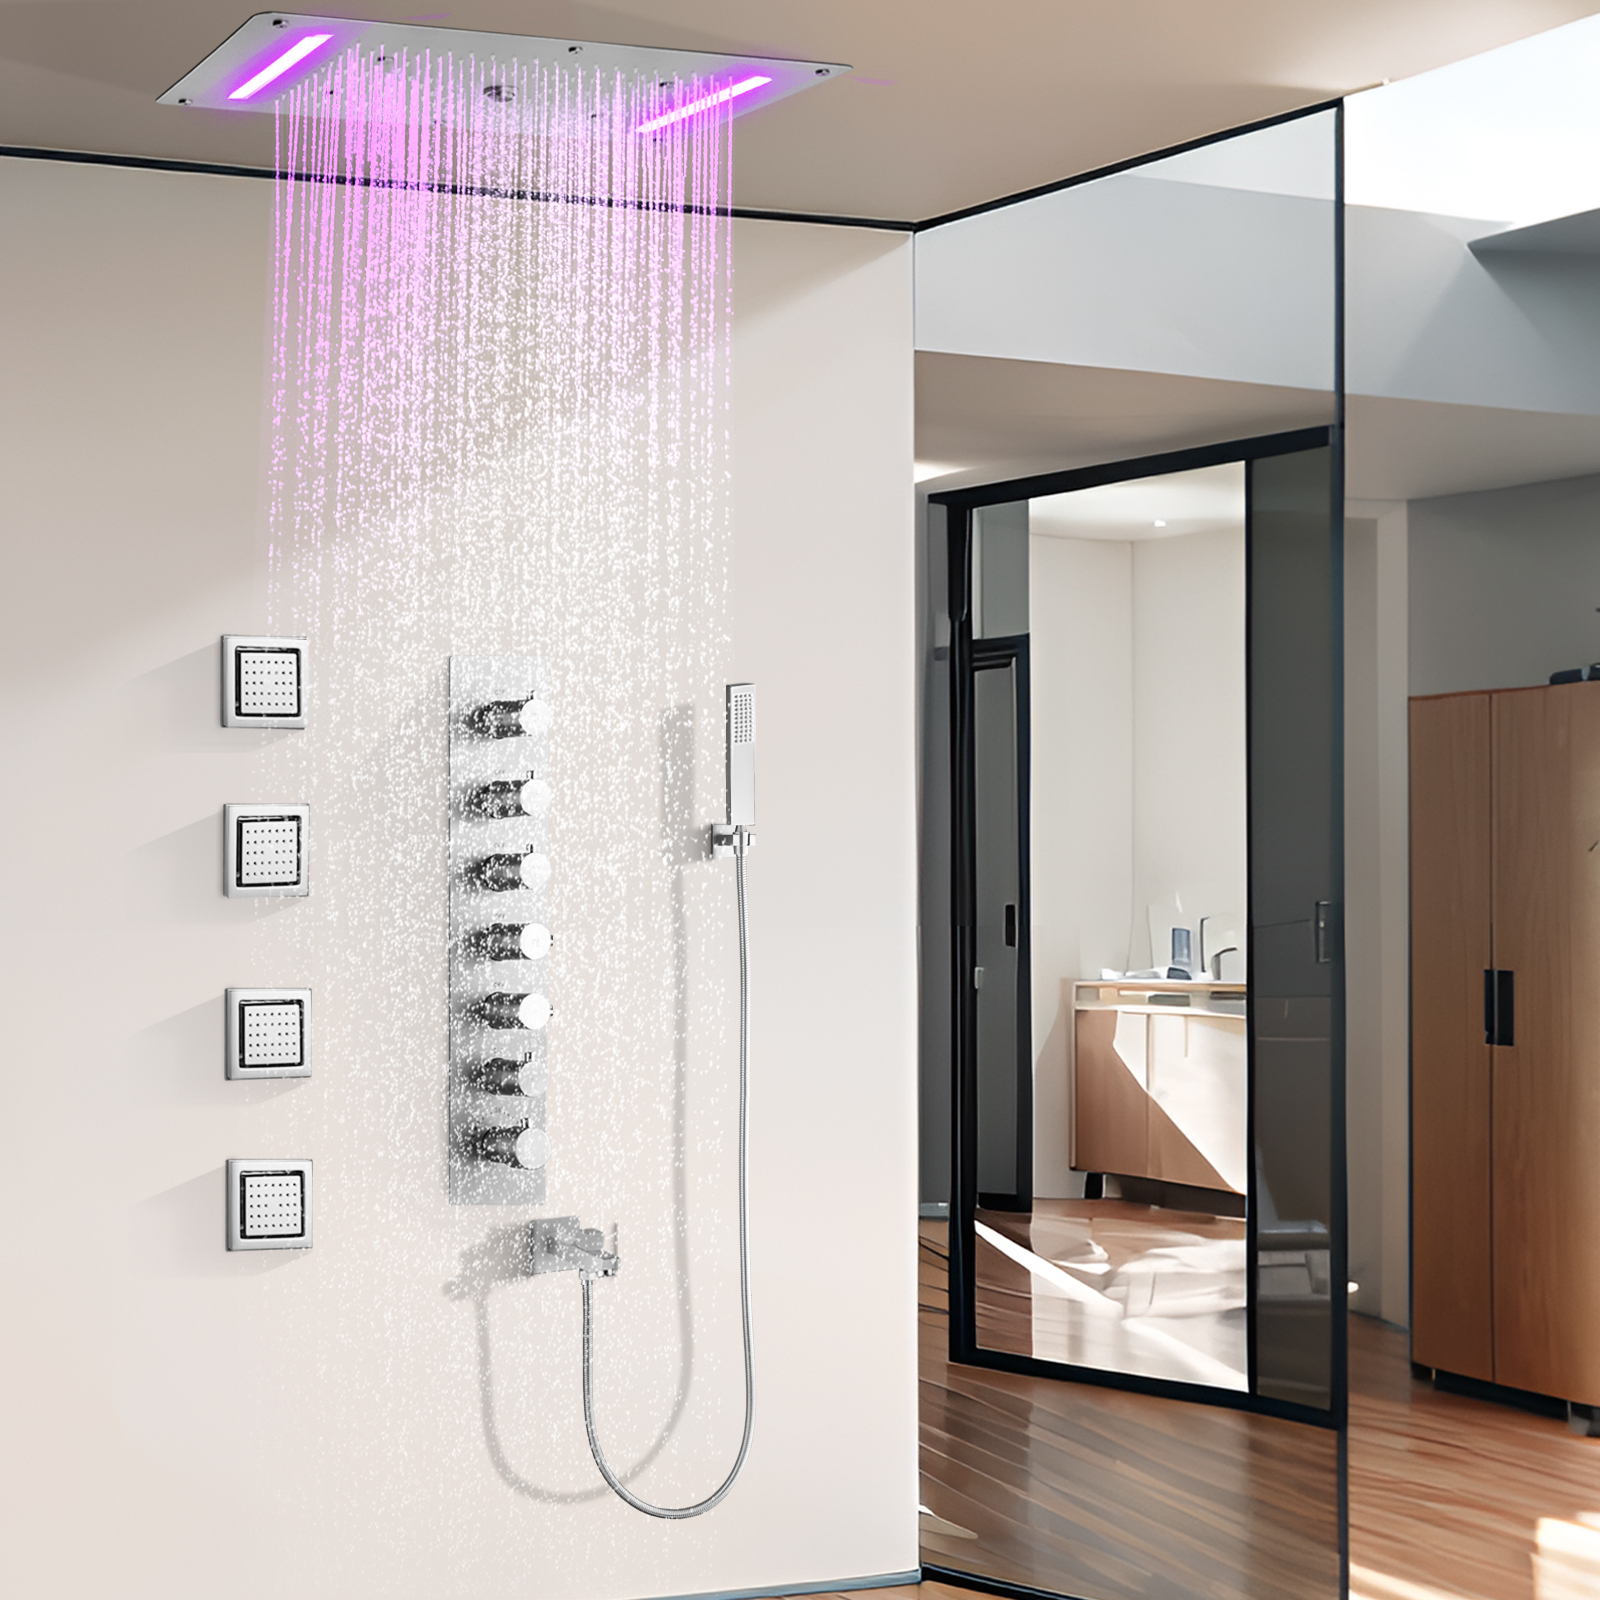 Ritting níquel temperatura constante cabeça de chuveiro enxaguar o banheiro moderno escuro chuvas led painel chuveiro atomizador spa